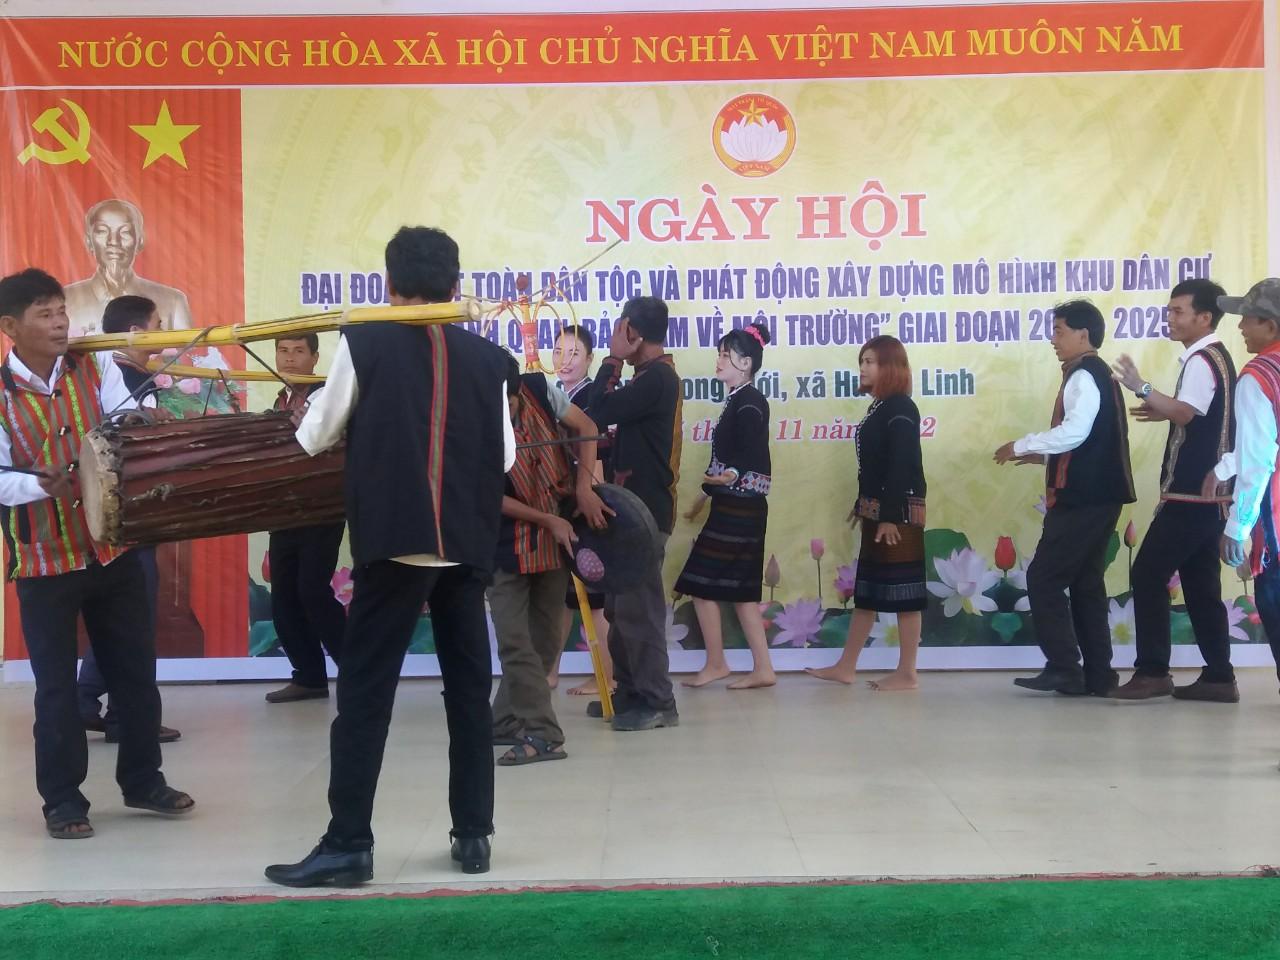 Thôn Hoong Mới, xã Hướng Linh tổ chức Ngày hội Đại đoàn kết toàn dân tộc năm 2022 và phát động xây...